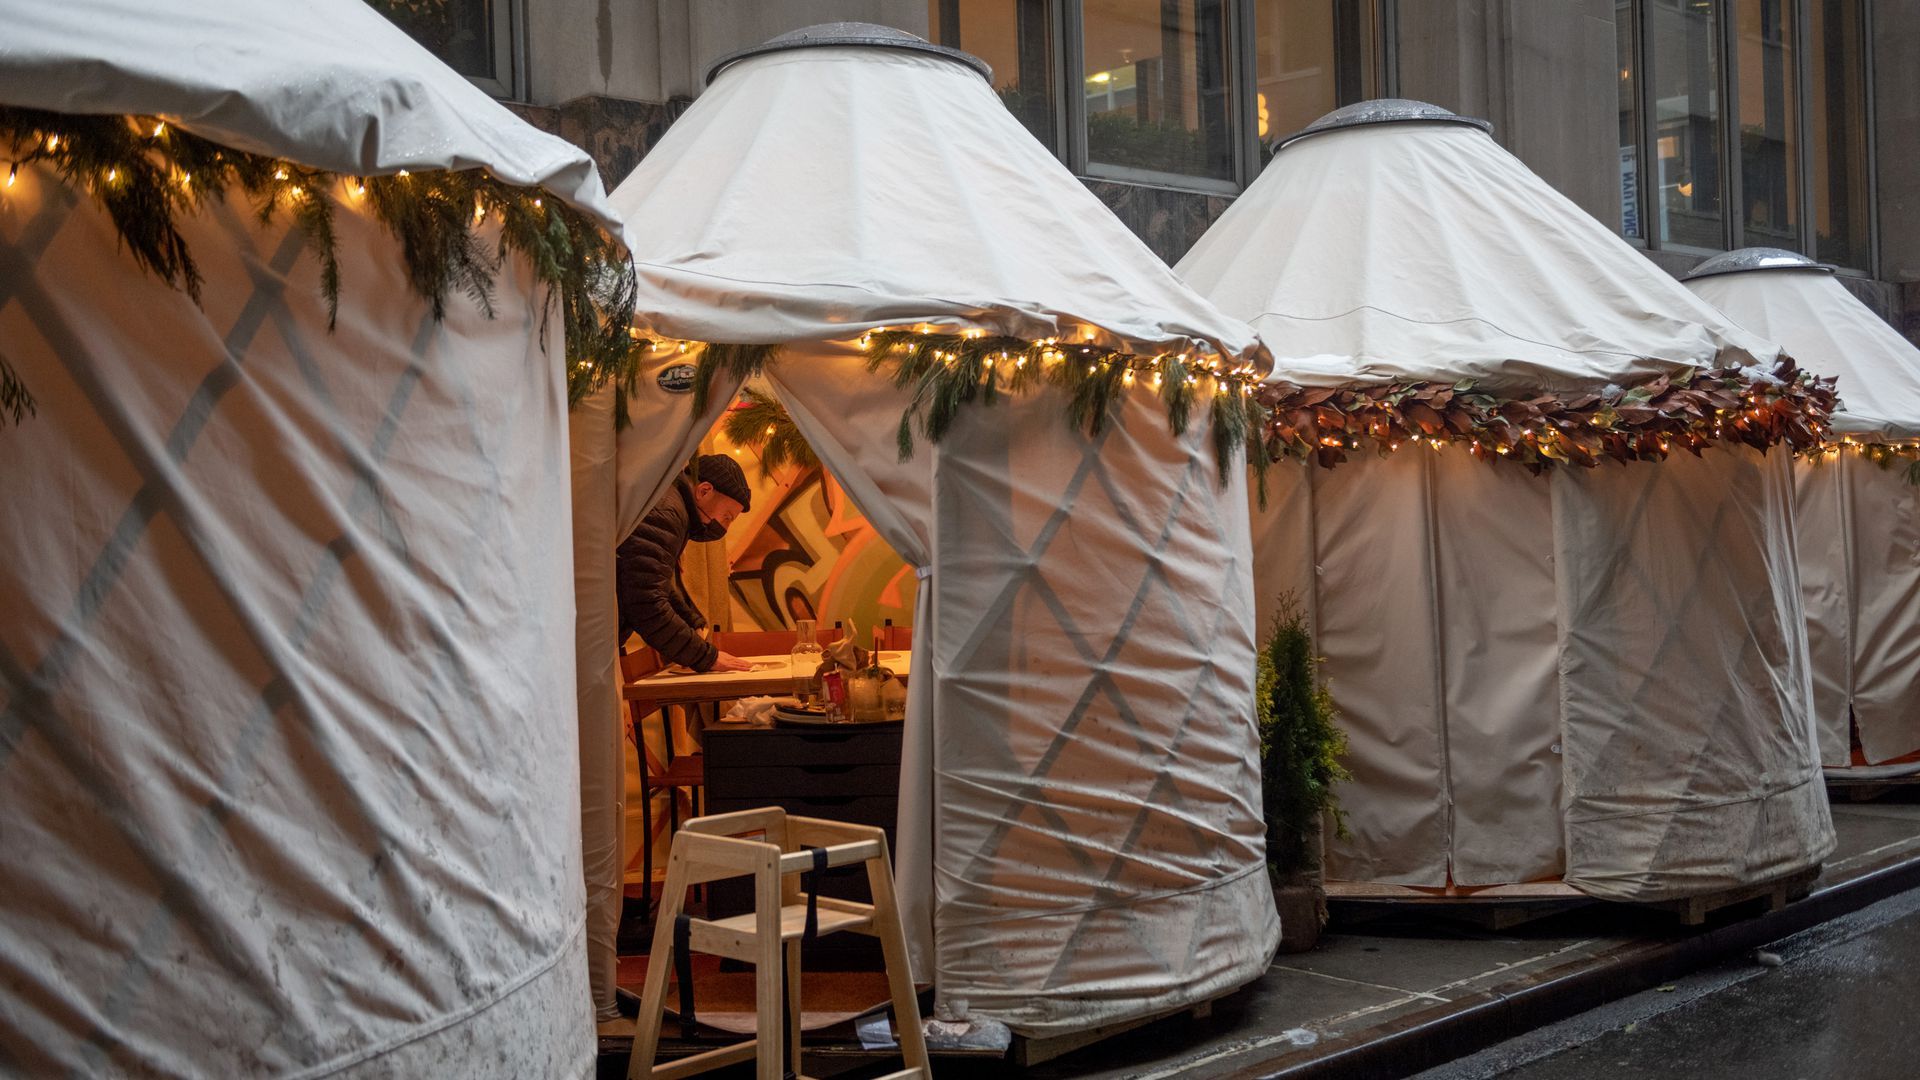 A server sanitizes an outdoor dining yurt in Manhattan.